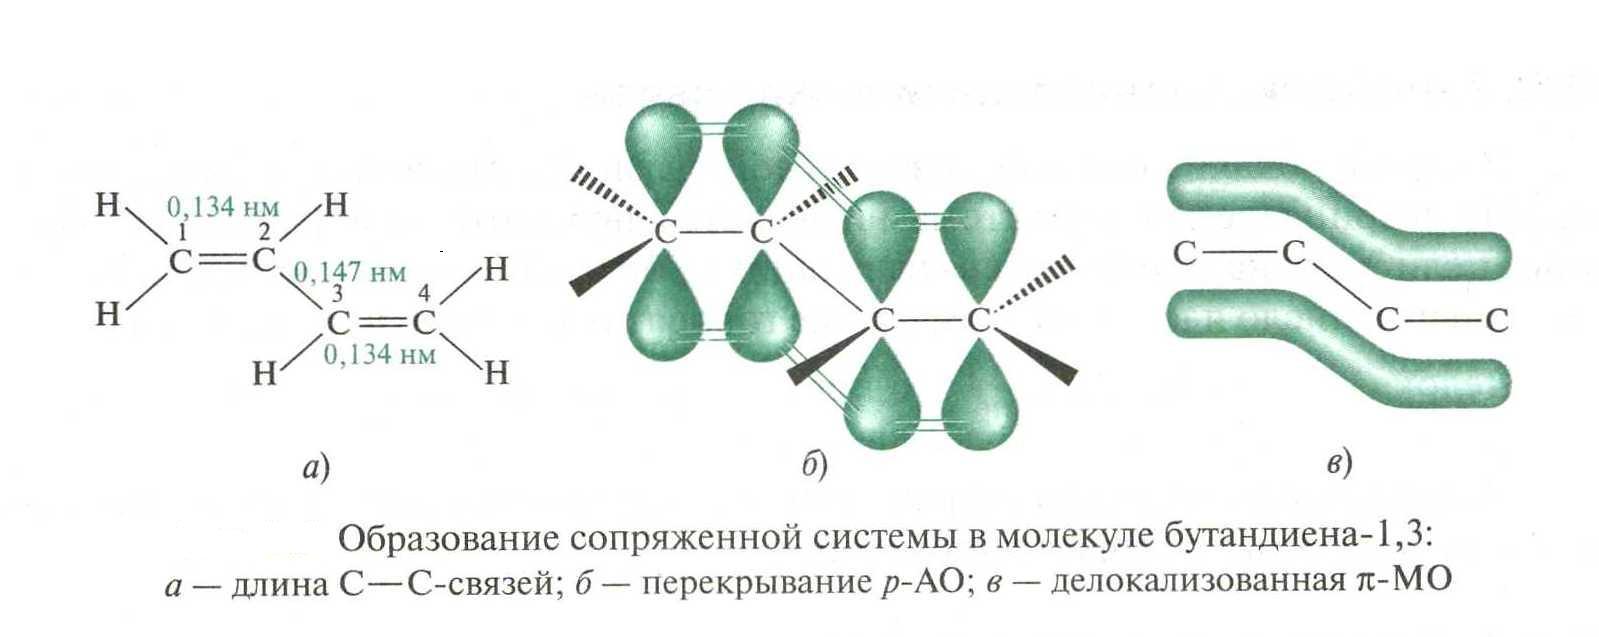 Бутадиен 1 2 гибридизация атомов углерода. Электронное строение молекулы бутадиена-1.3. Строение молекулы бутадиена 1.3. Сопряженные системы бутадиен 1 3. Система сопряженных связей в молекулах.